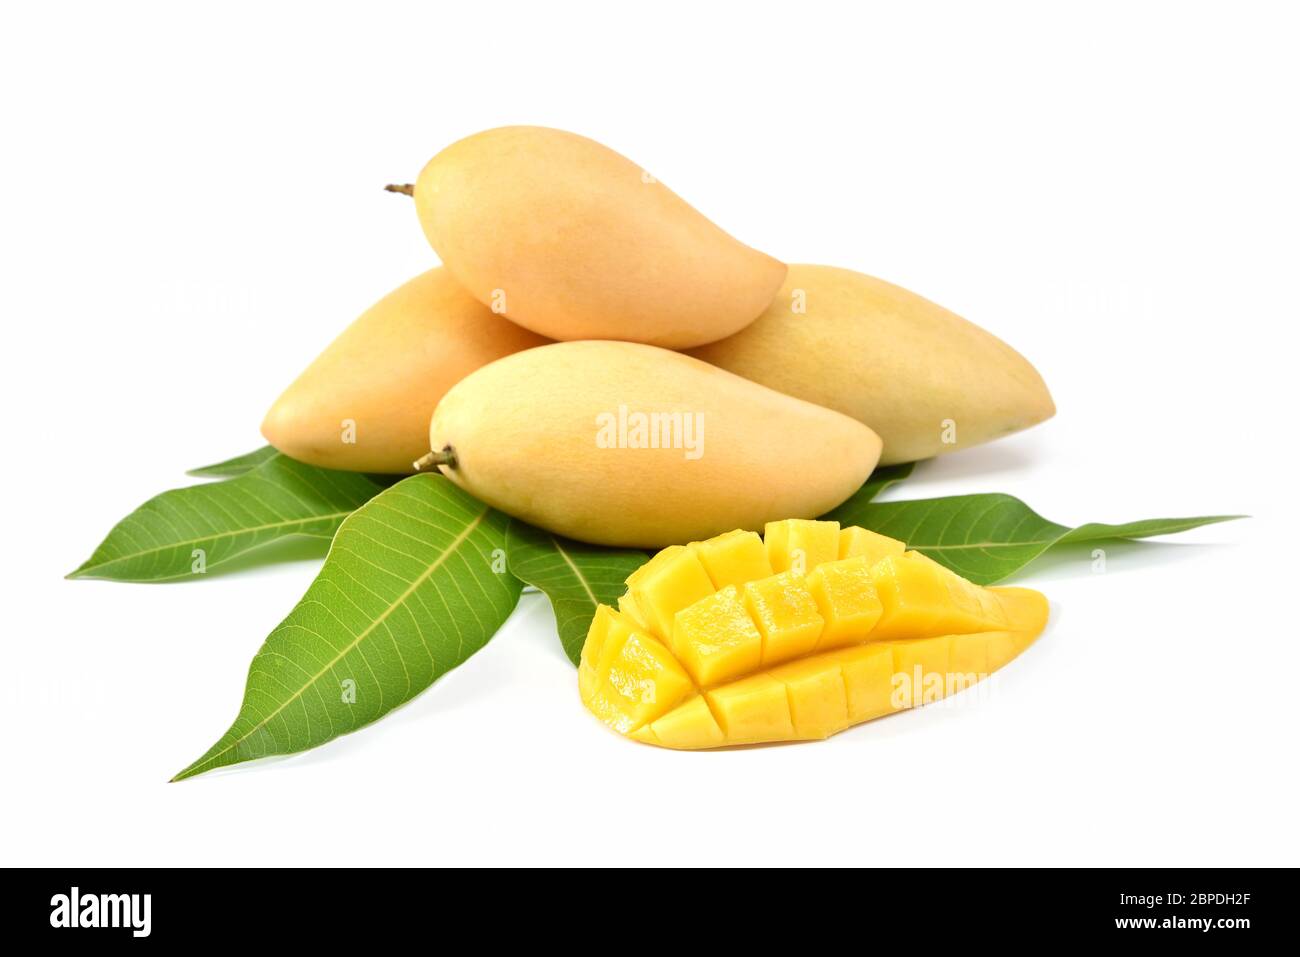 Frutta di mango con cubetti di mango e fette. Isolato su sfondo bianco. Perfetta frutta di mango matura. Messa a fuoco selezionata Foto Stock